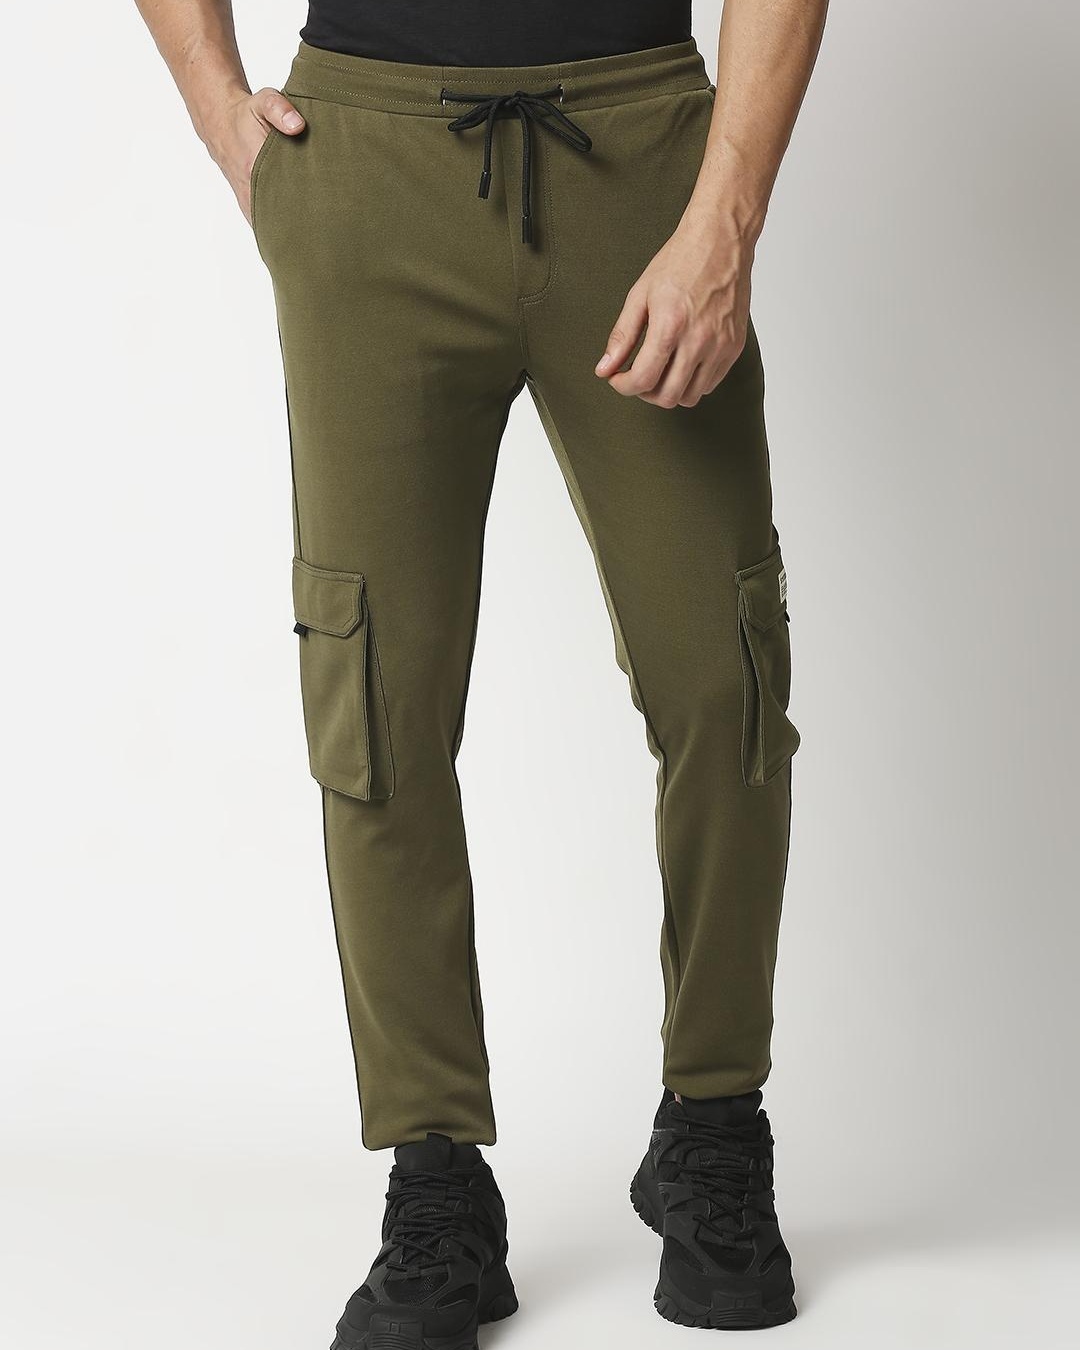 Buy Men's Green Track Pants Online at Bewakoof